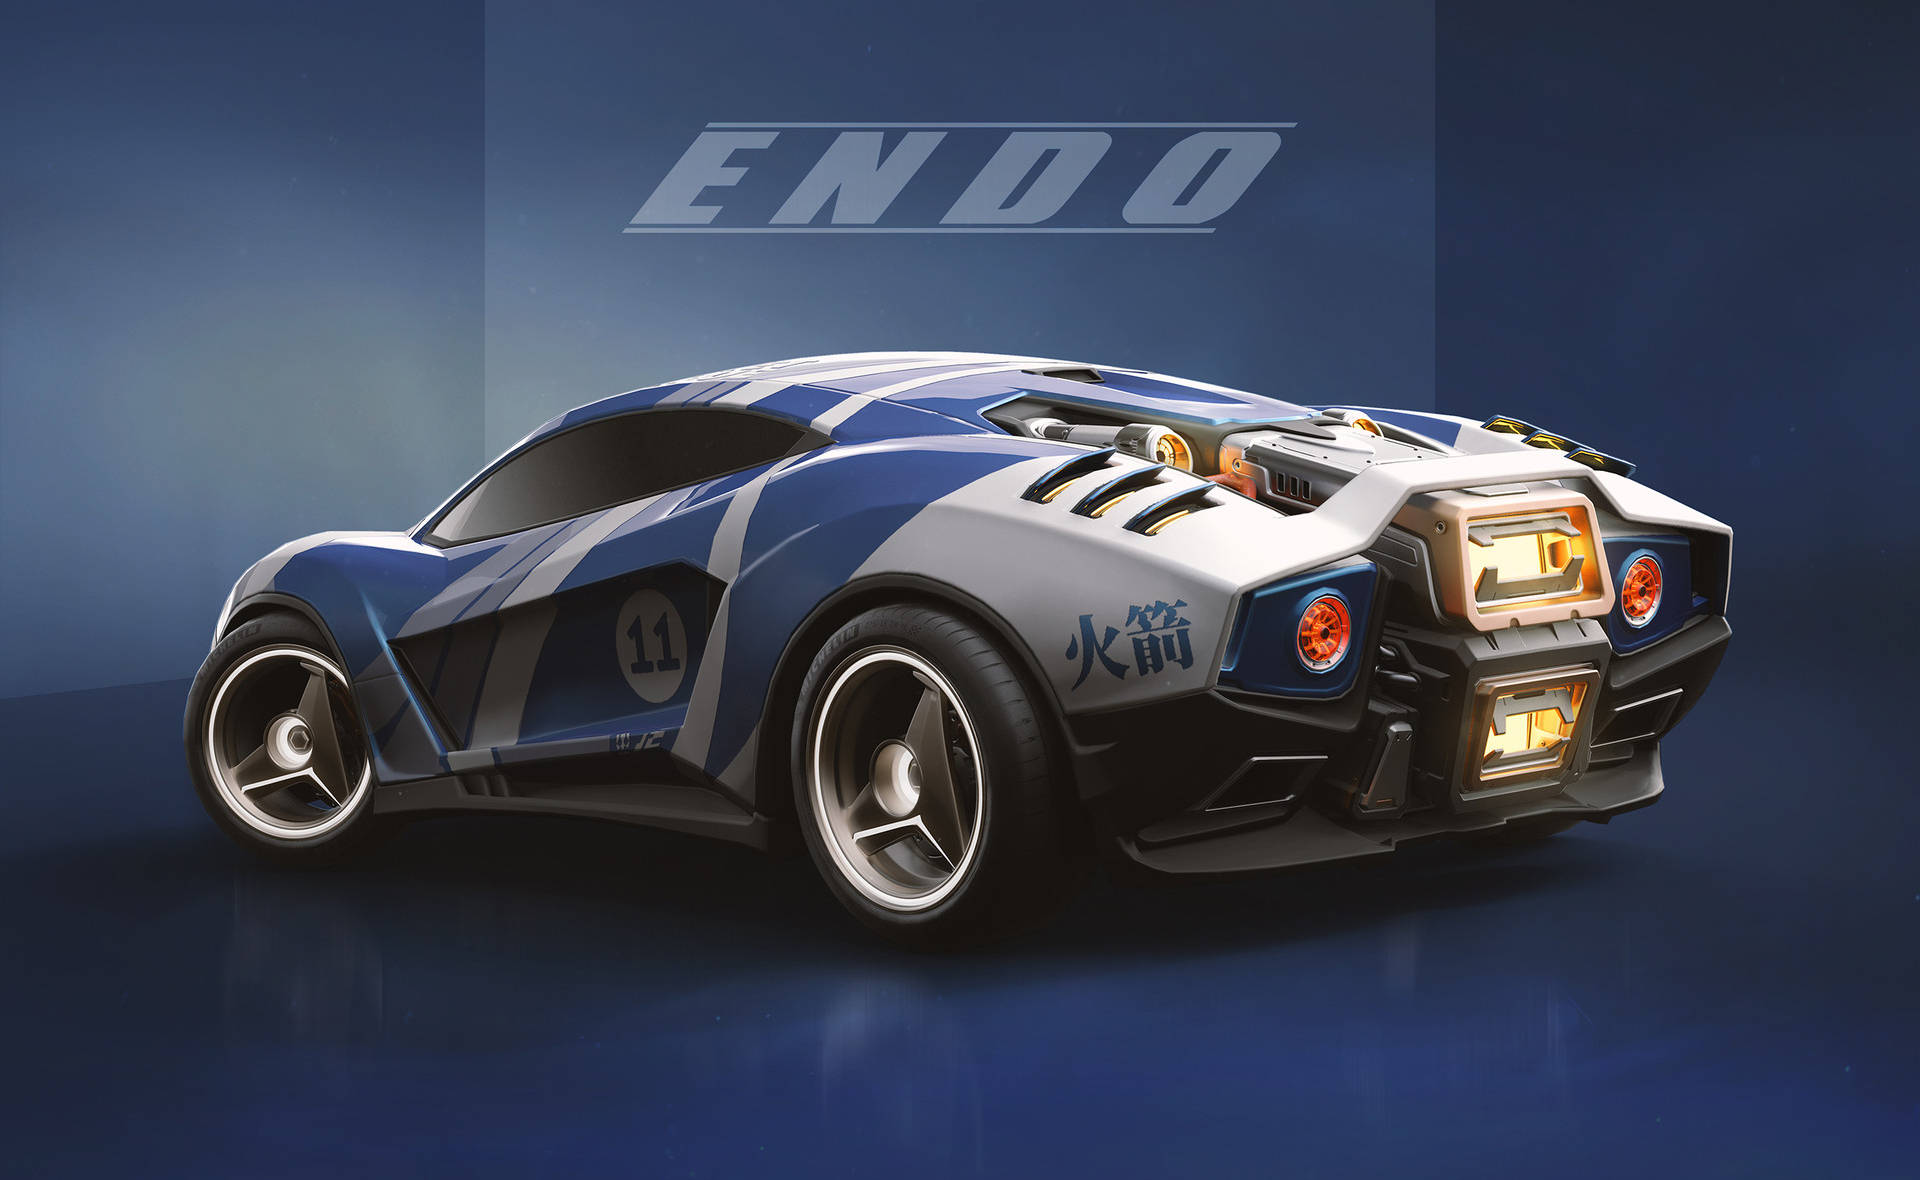 Cool Rocket League Endo Car Background